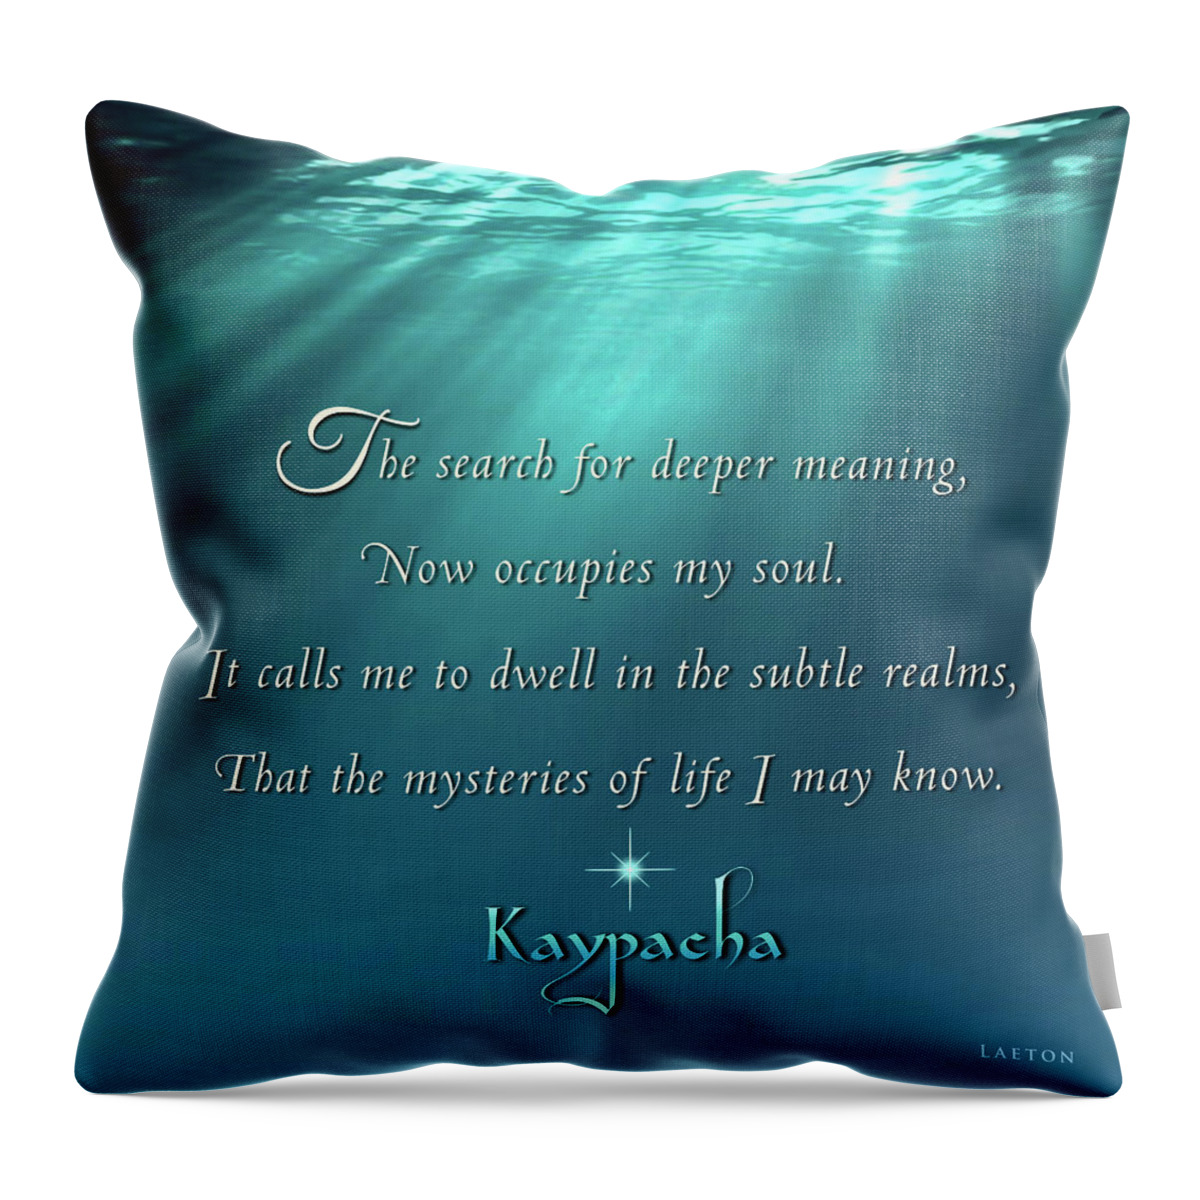 Age Of Aquarius Throw Pillow featuring the mixed media Kaypacha's mantra 4.27.2016 by Richard Laeton